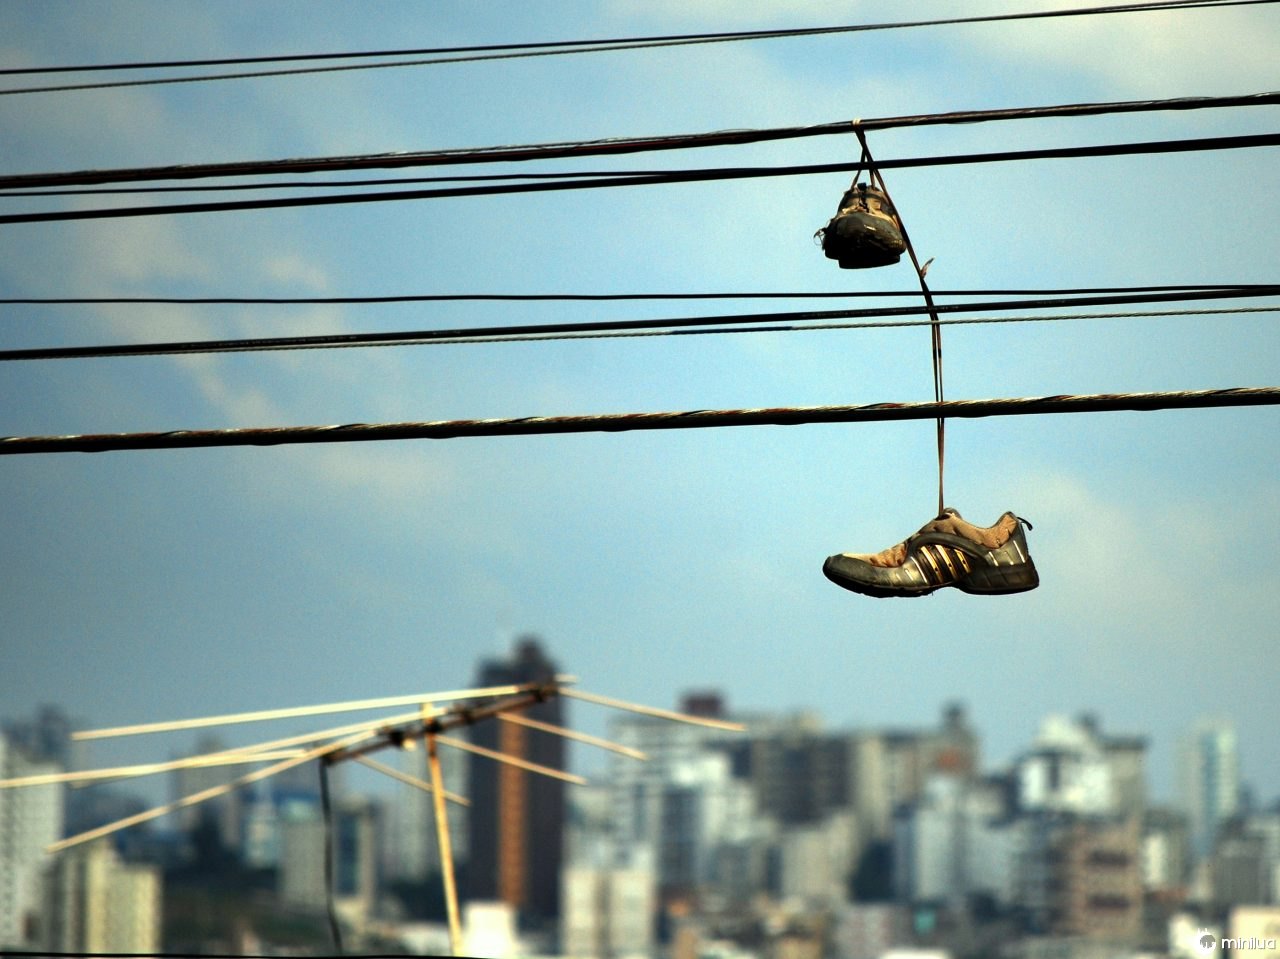  Je hebt vast wel eens een paar sportschoenen aan de bedrading van de straat zien hangen, maar wat betekent dat?